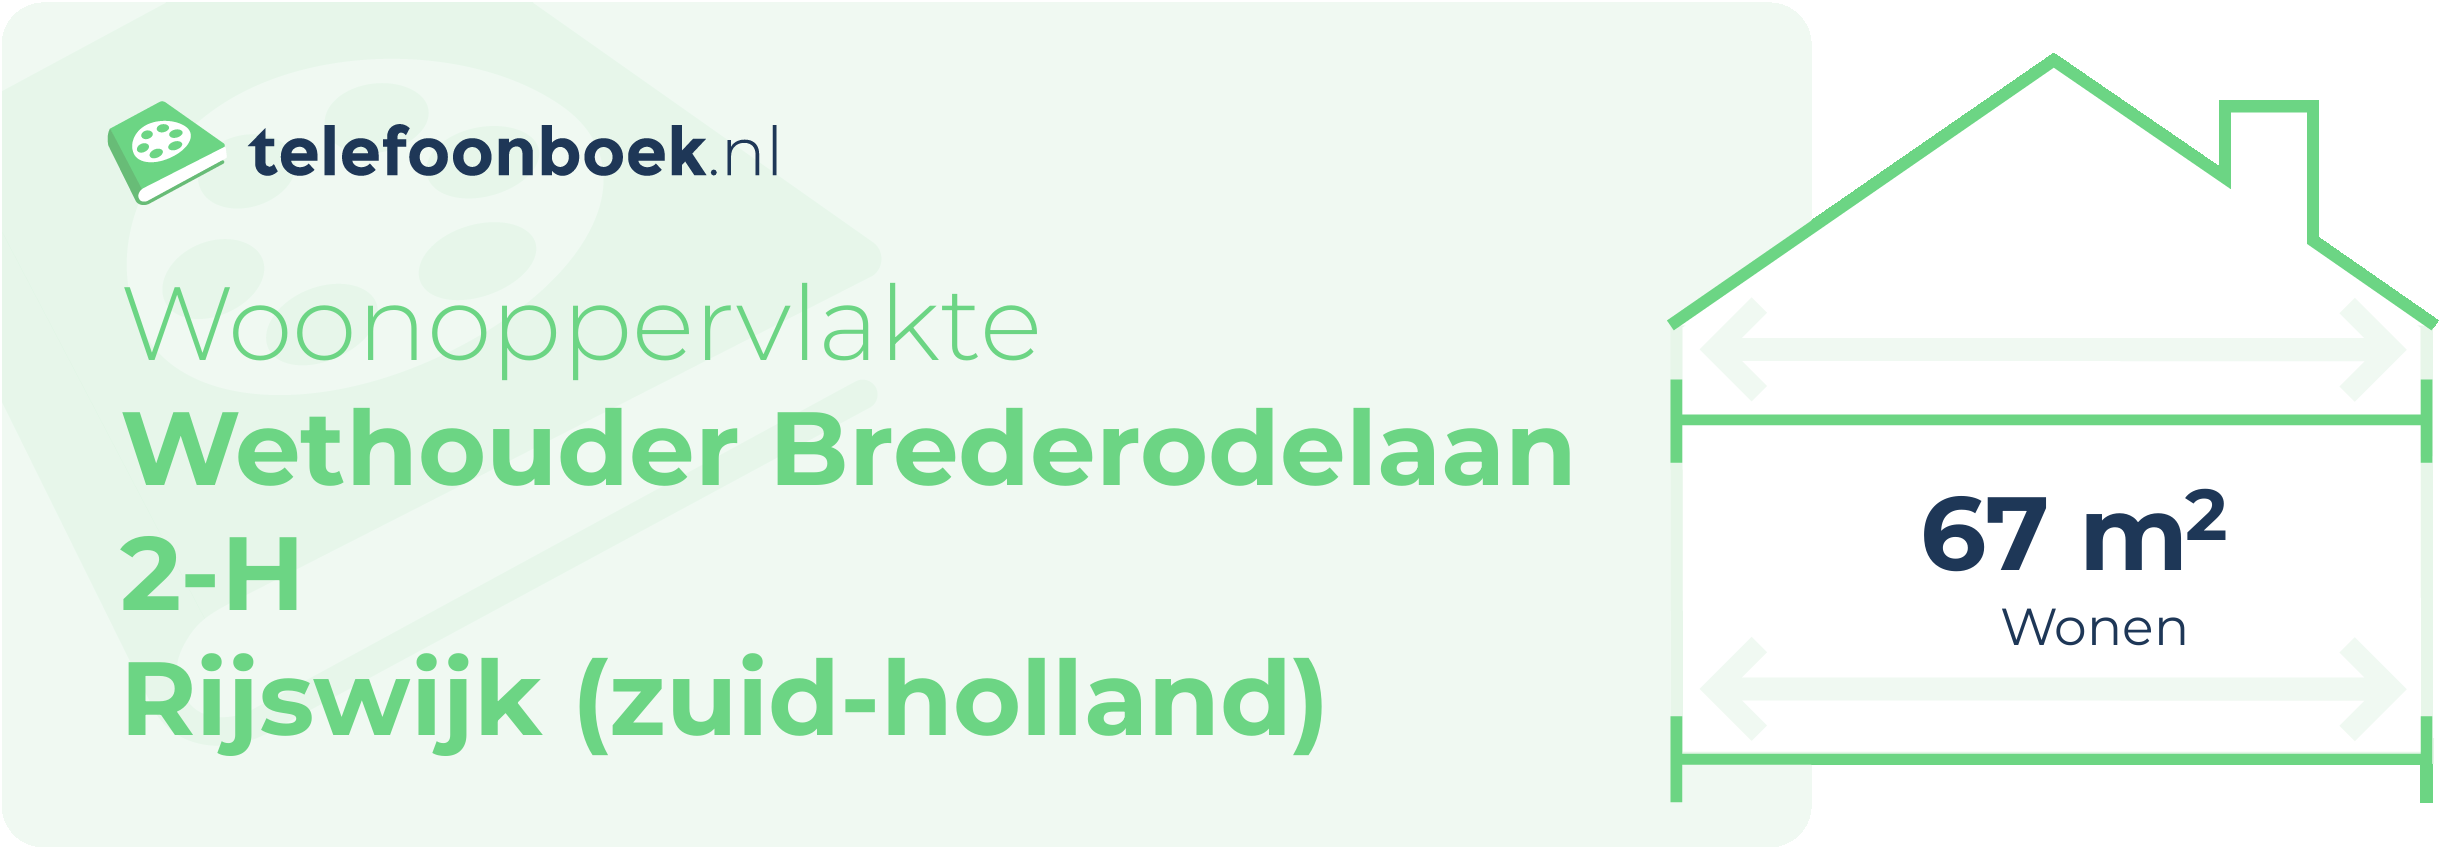 Woonoppervlakte Wethouder Brederodelaan 2-H Rijswijk (Zuid-Holland)